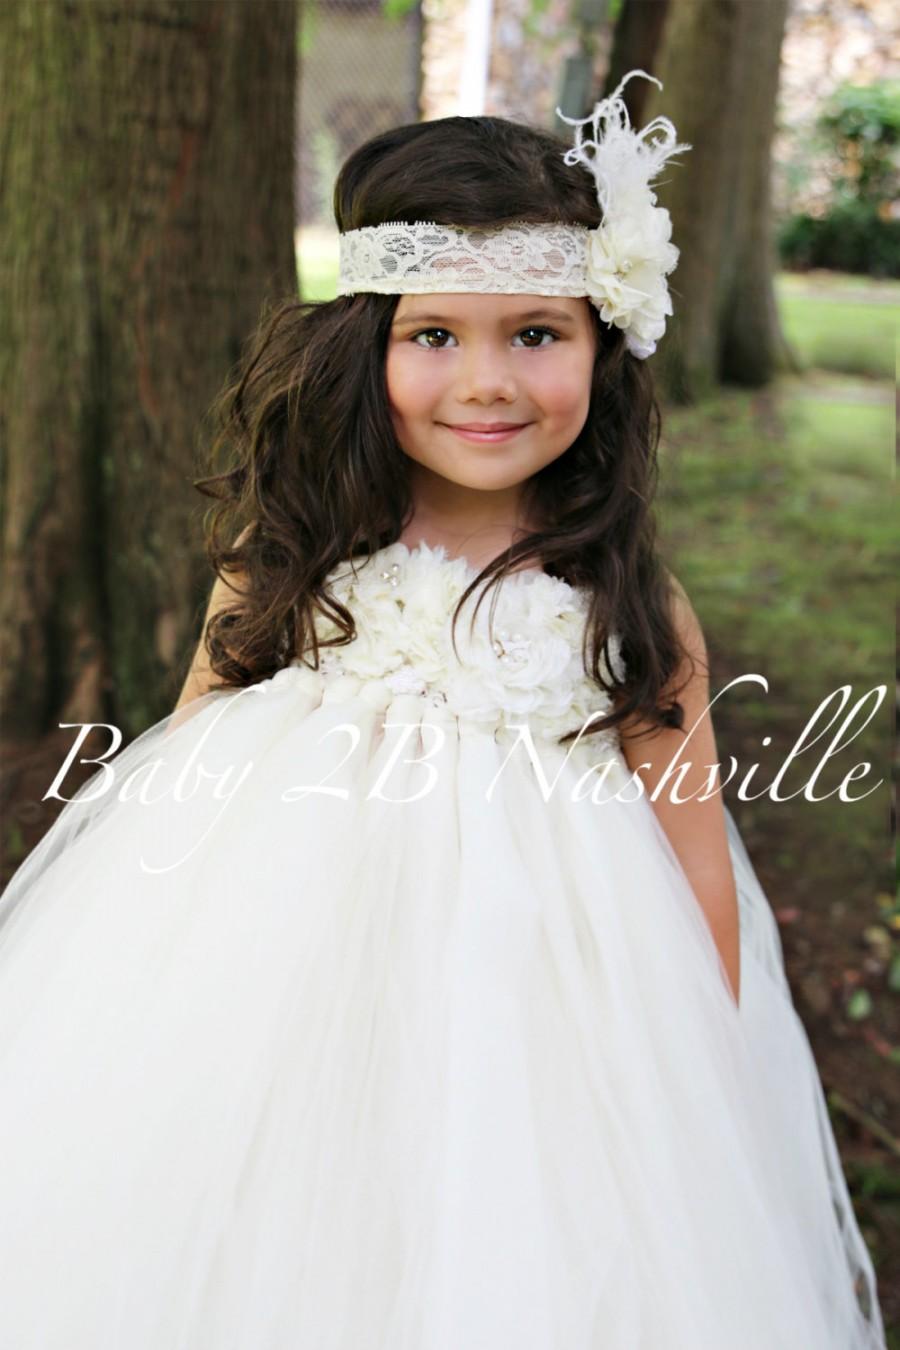 زفاف - Floral Ivory Flower Girl Dress Wedding Flower Gilrl Dress Tutu Dress  All Sizes  Baby to Girls size 10